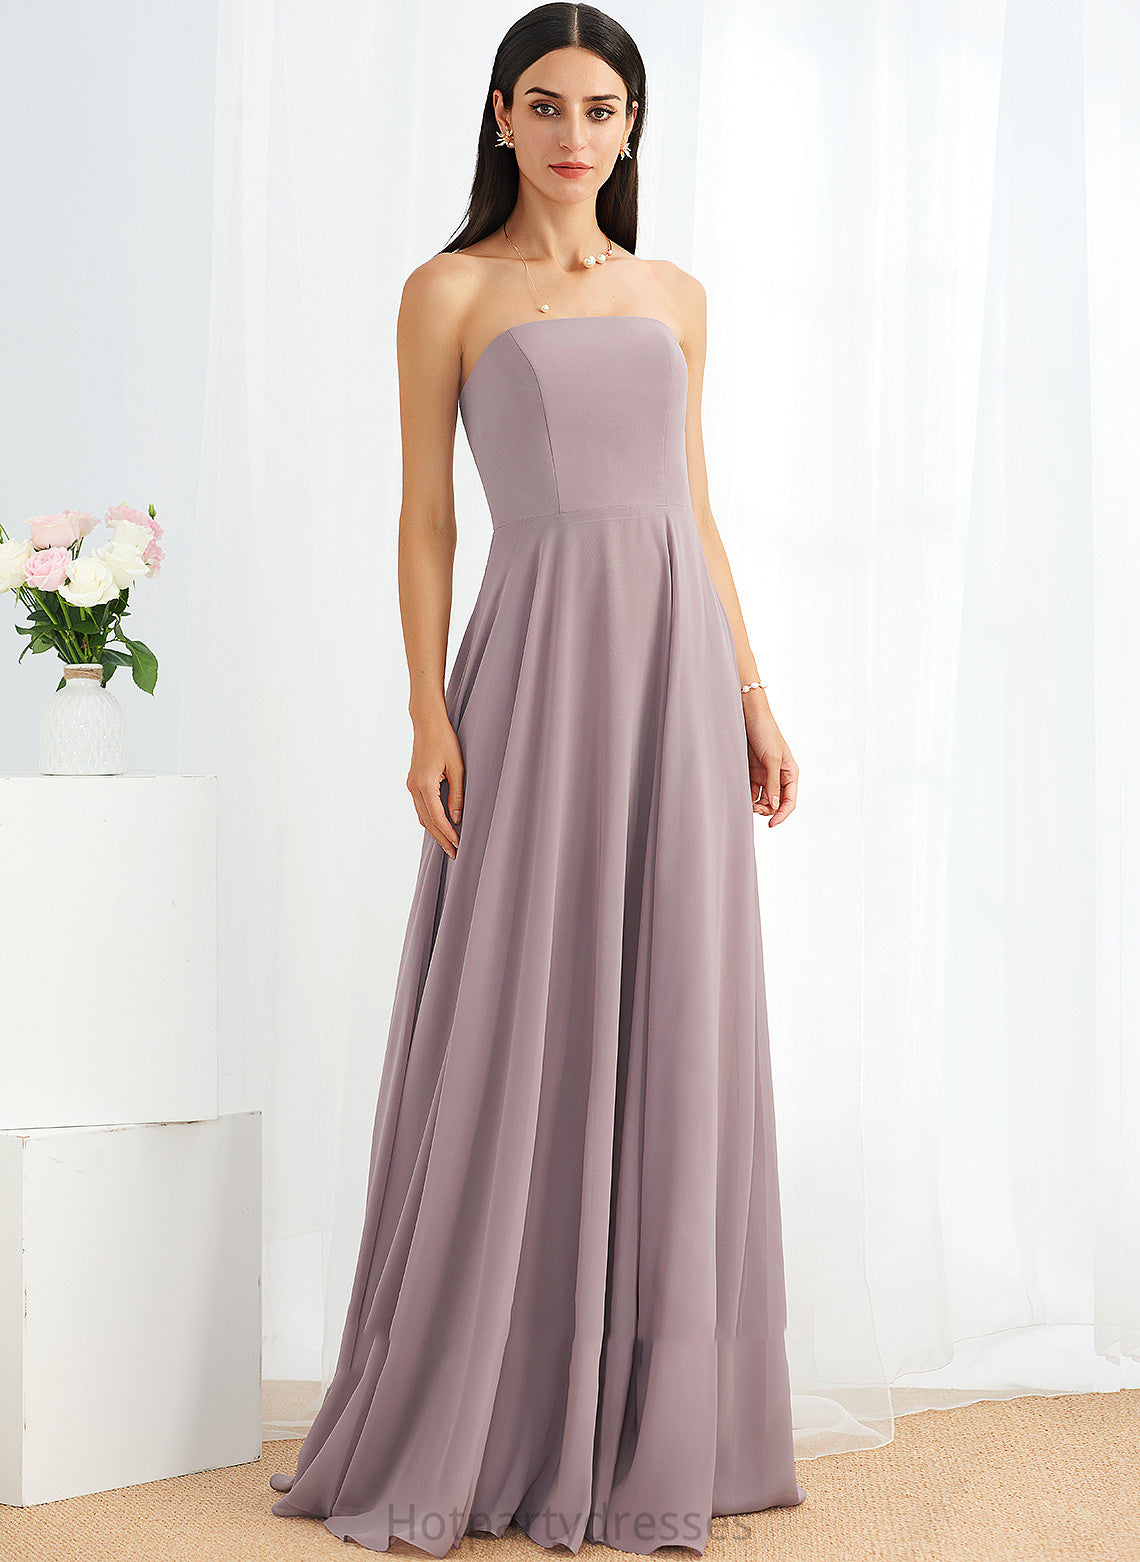 Silhouette Length Strapless Floor-Length Embellishment SplitFront Neckline Fabric A-Line Cecelia A-Line/Princess Tea Length Bridesmaid Dresses